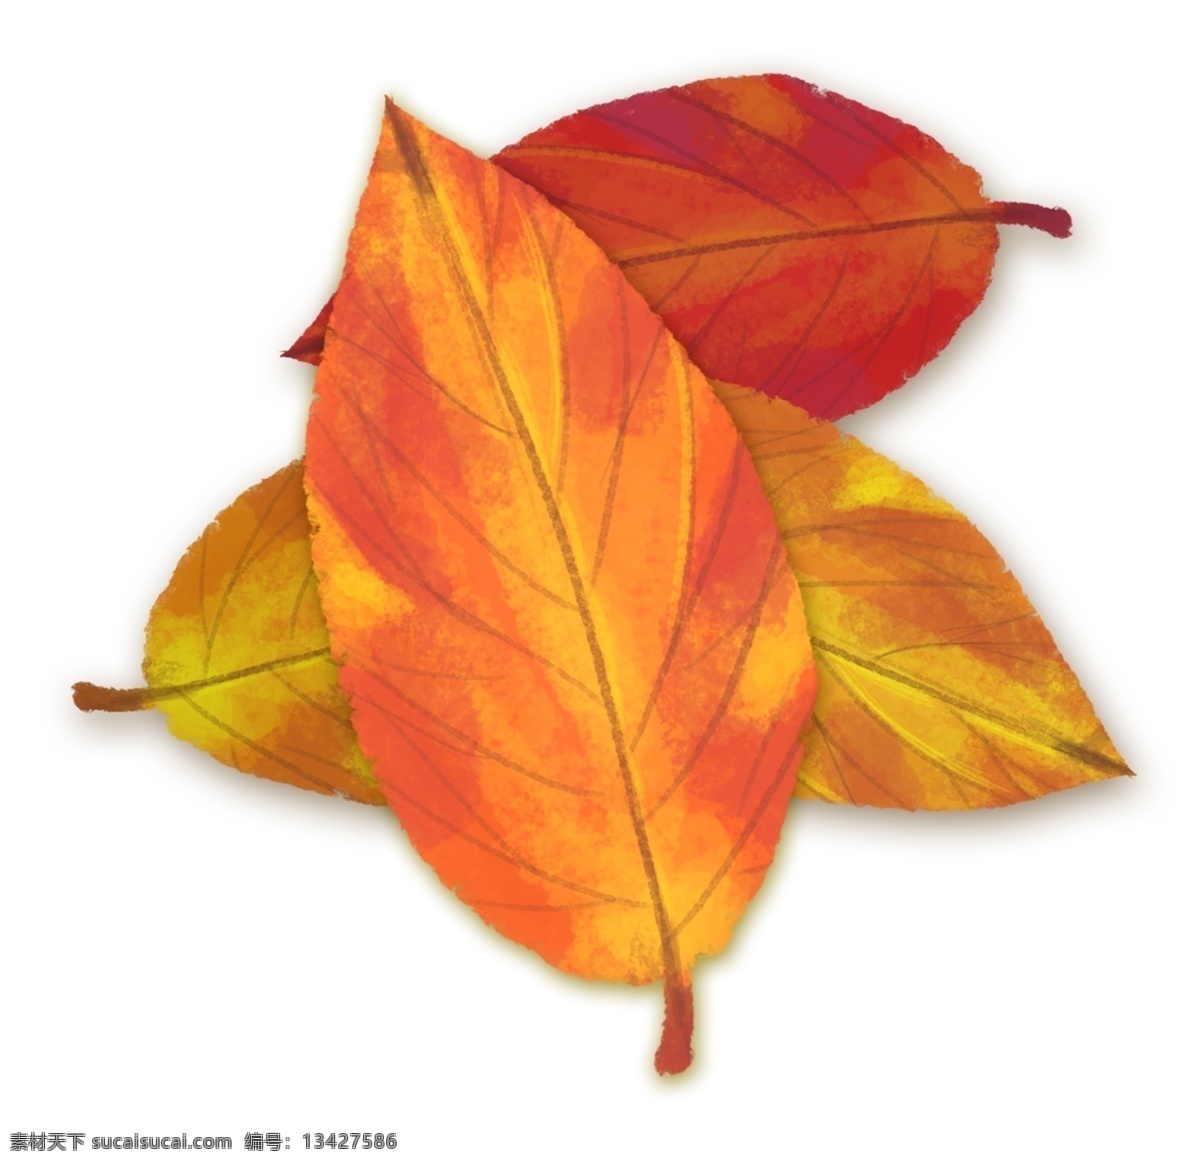 秋季 秋天 树叶 手绘 通用 小 清新 文艺 插画 中国风 水彩 小清新 秋天的叶子 黄叶 秋叶 各种